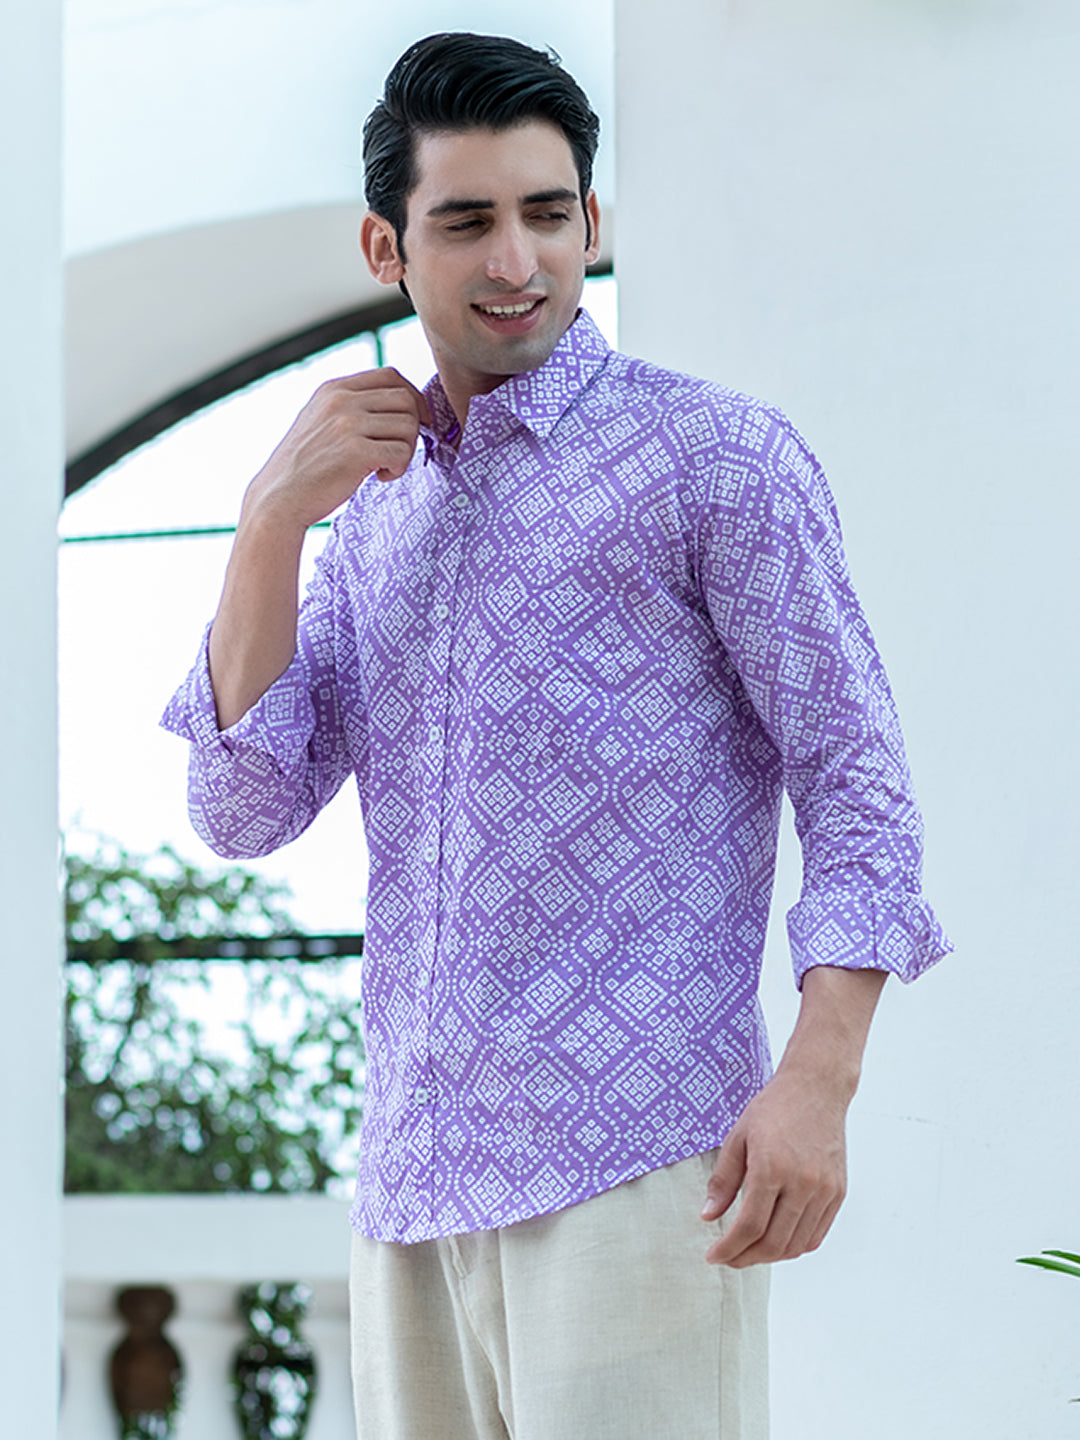 Buy Bandhani Full Sleeves Cotton Printed Shirt For Men Online